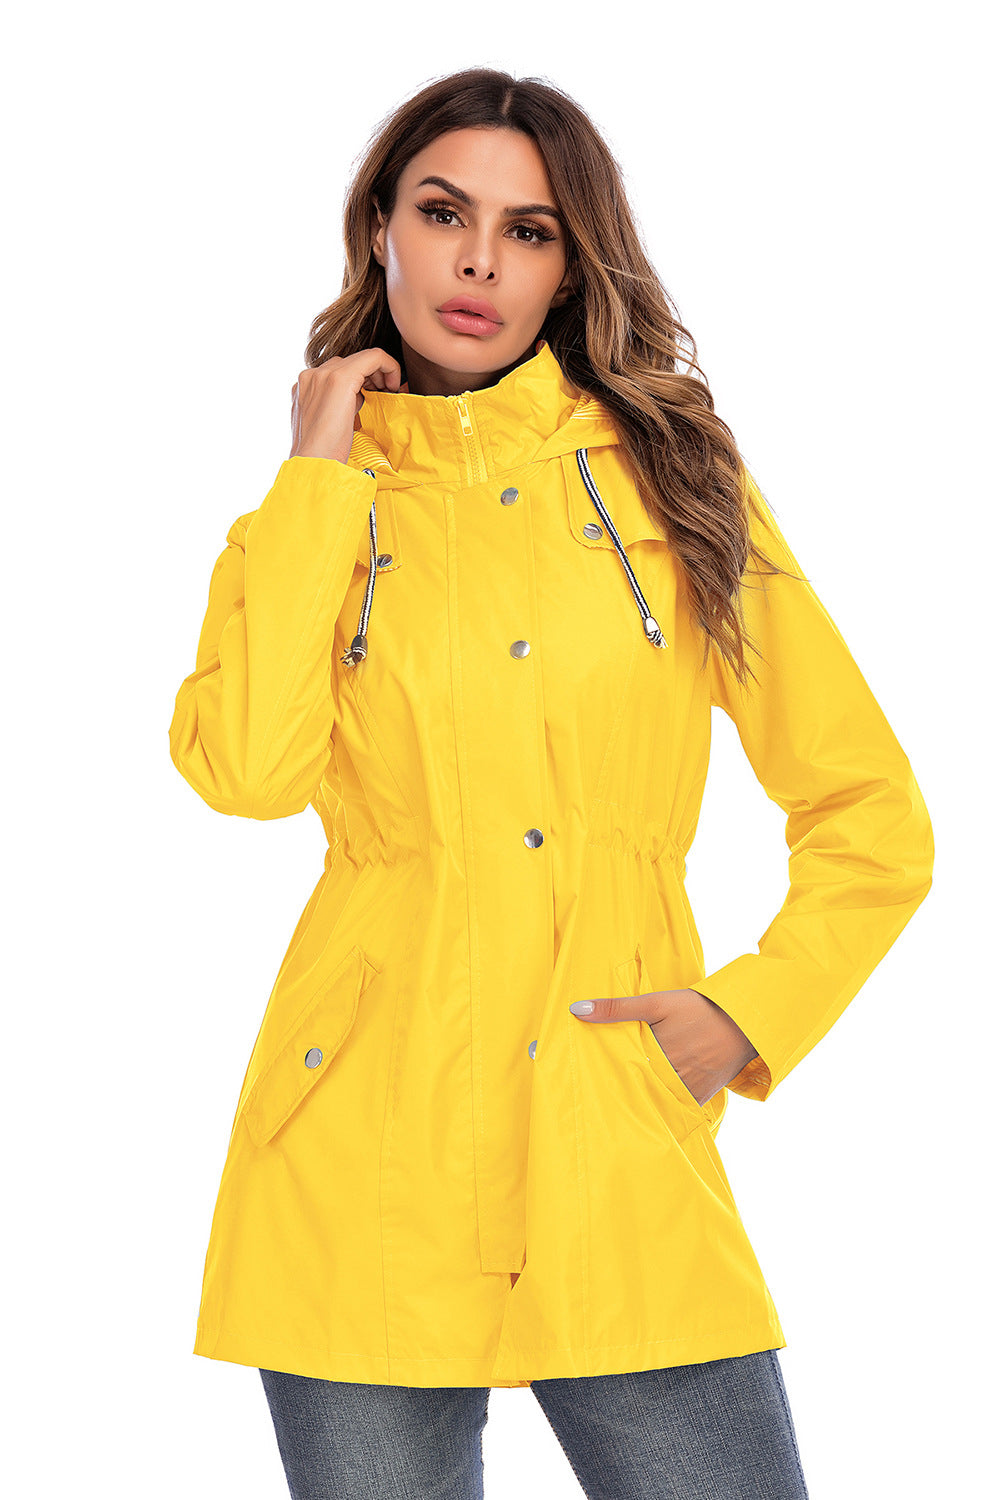 Snap & Zipper Front Hoodie Raincoat